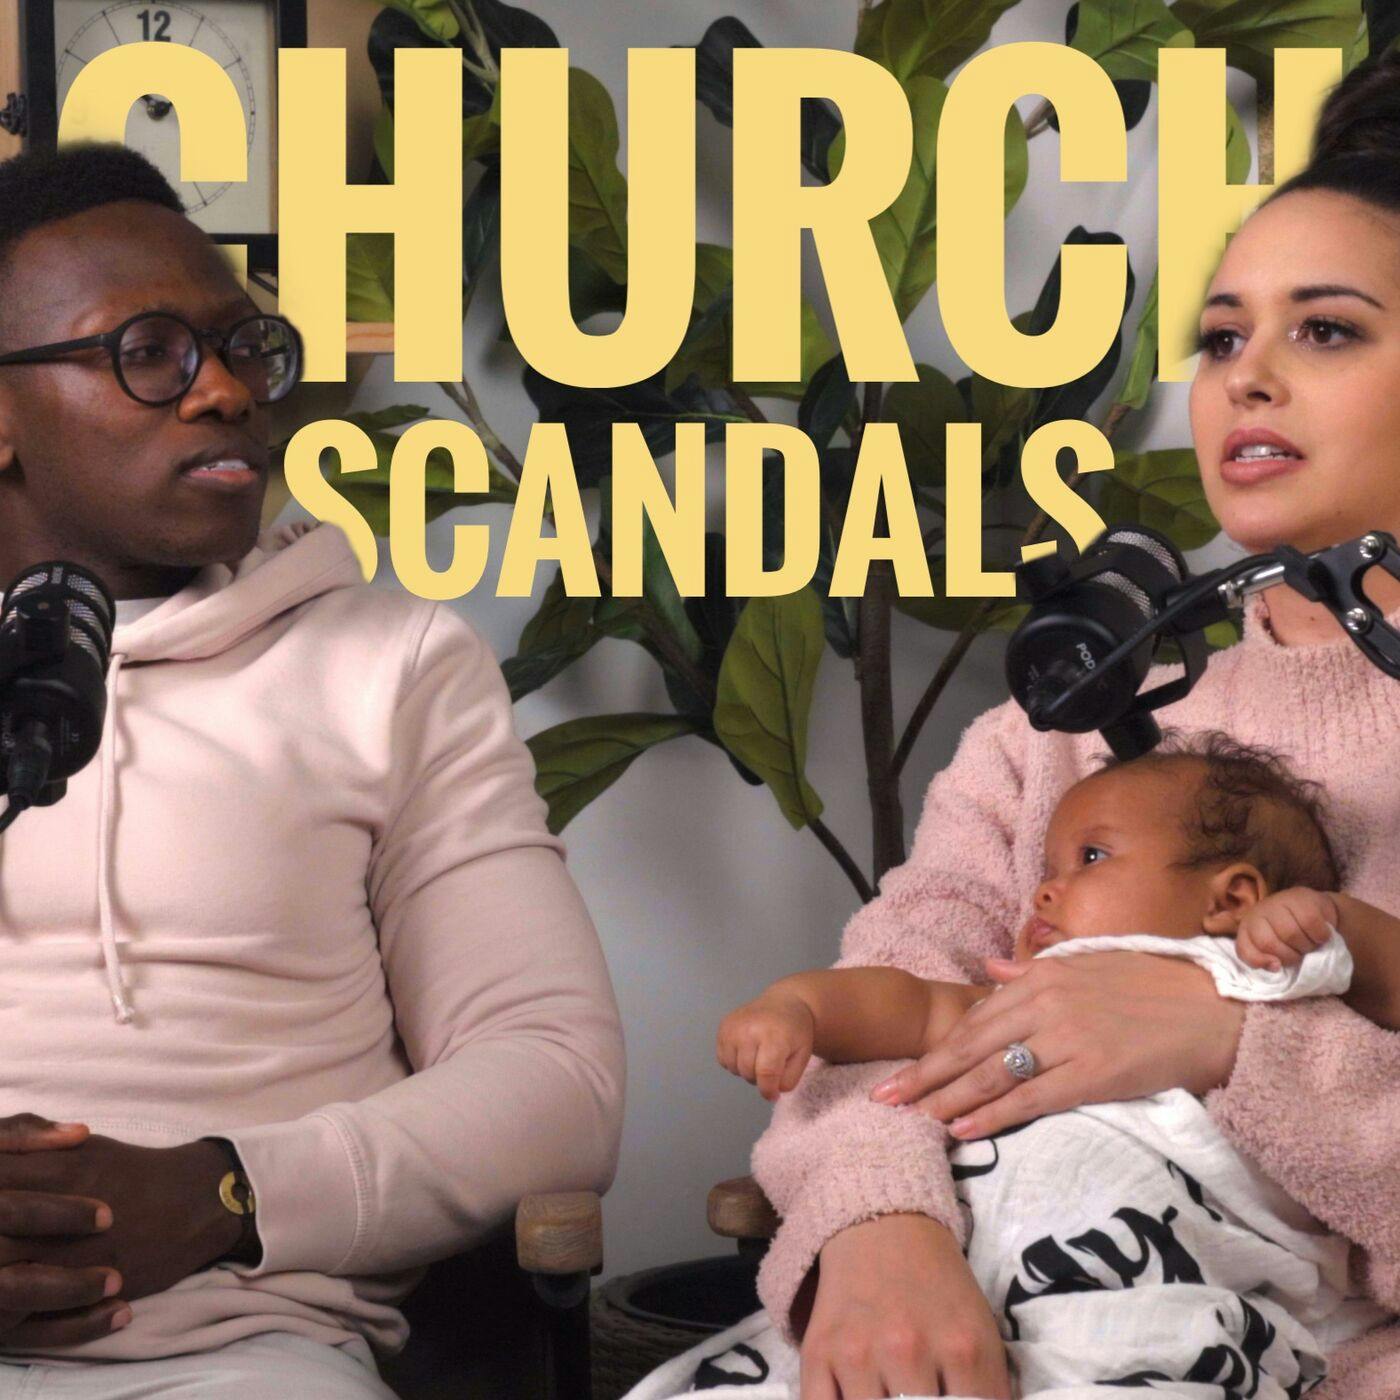 Our Take on Church Scandals  (bonus mini-episode)